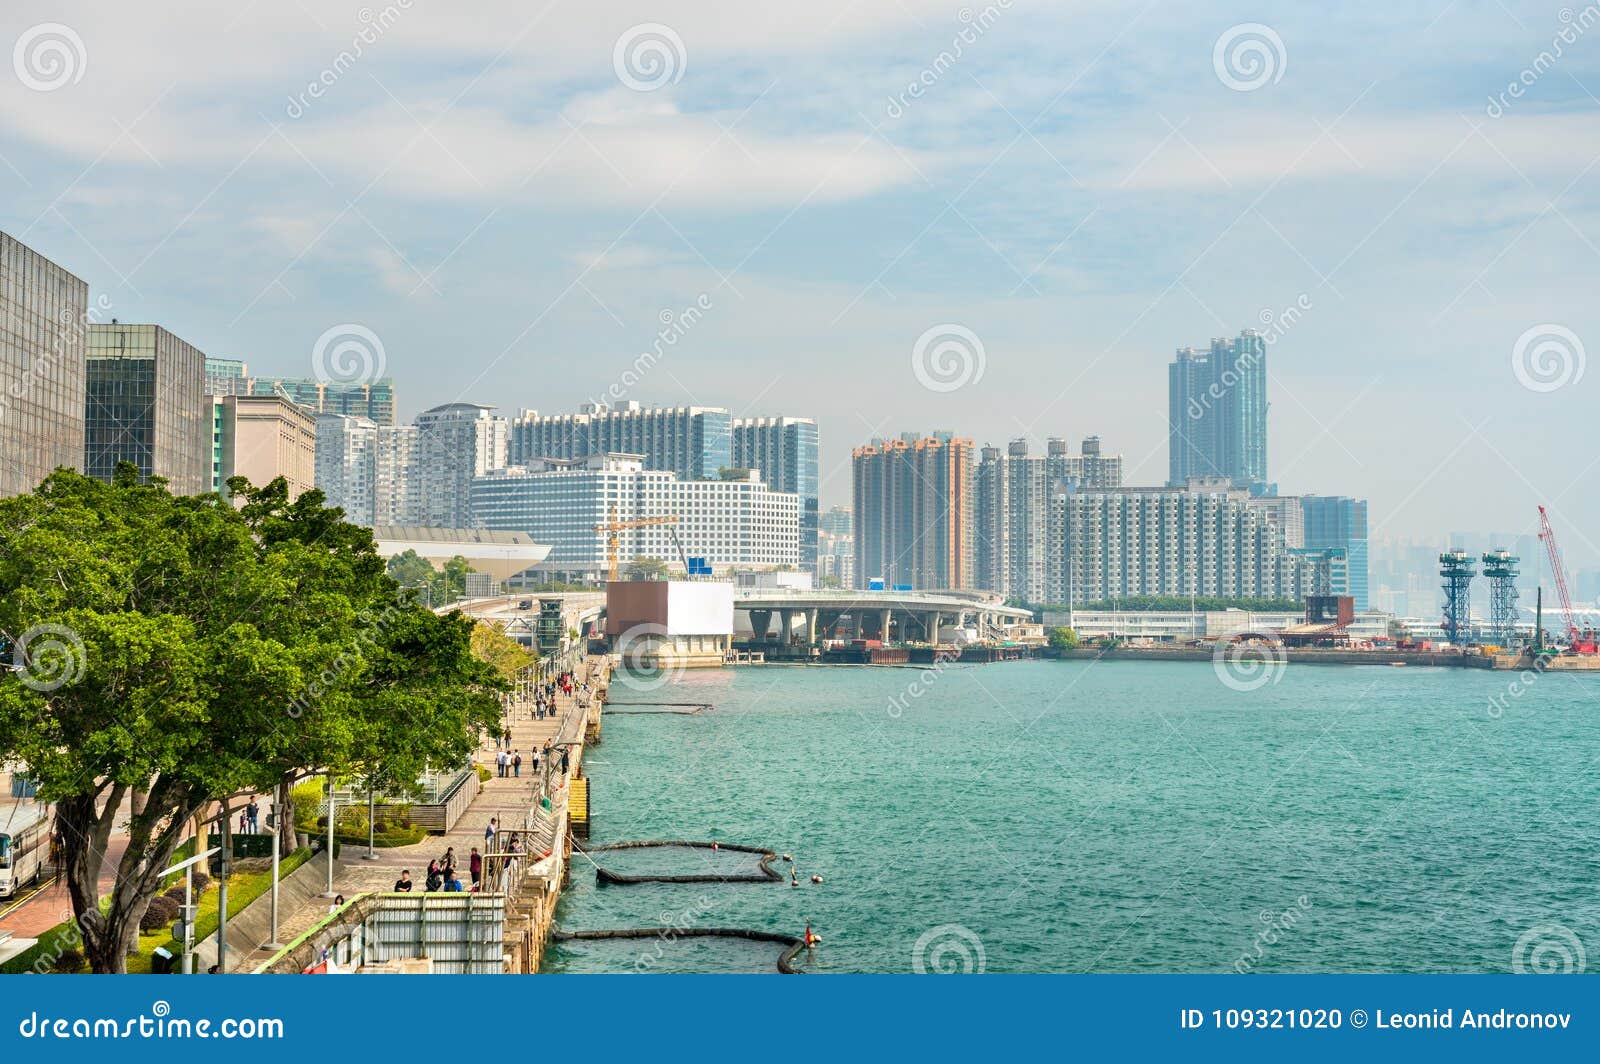 view along the tsim sha tsui promenade in hong kong